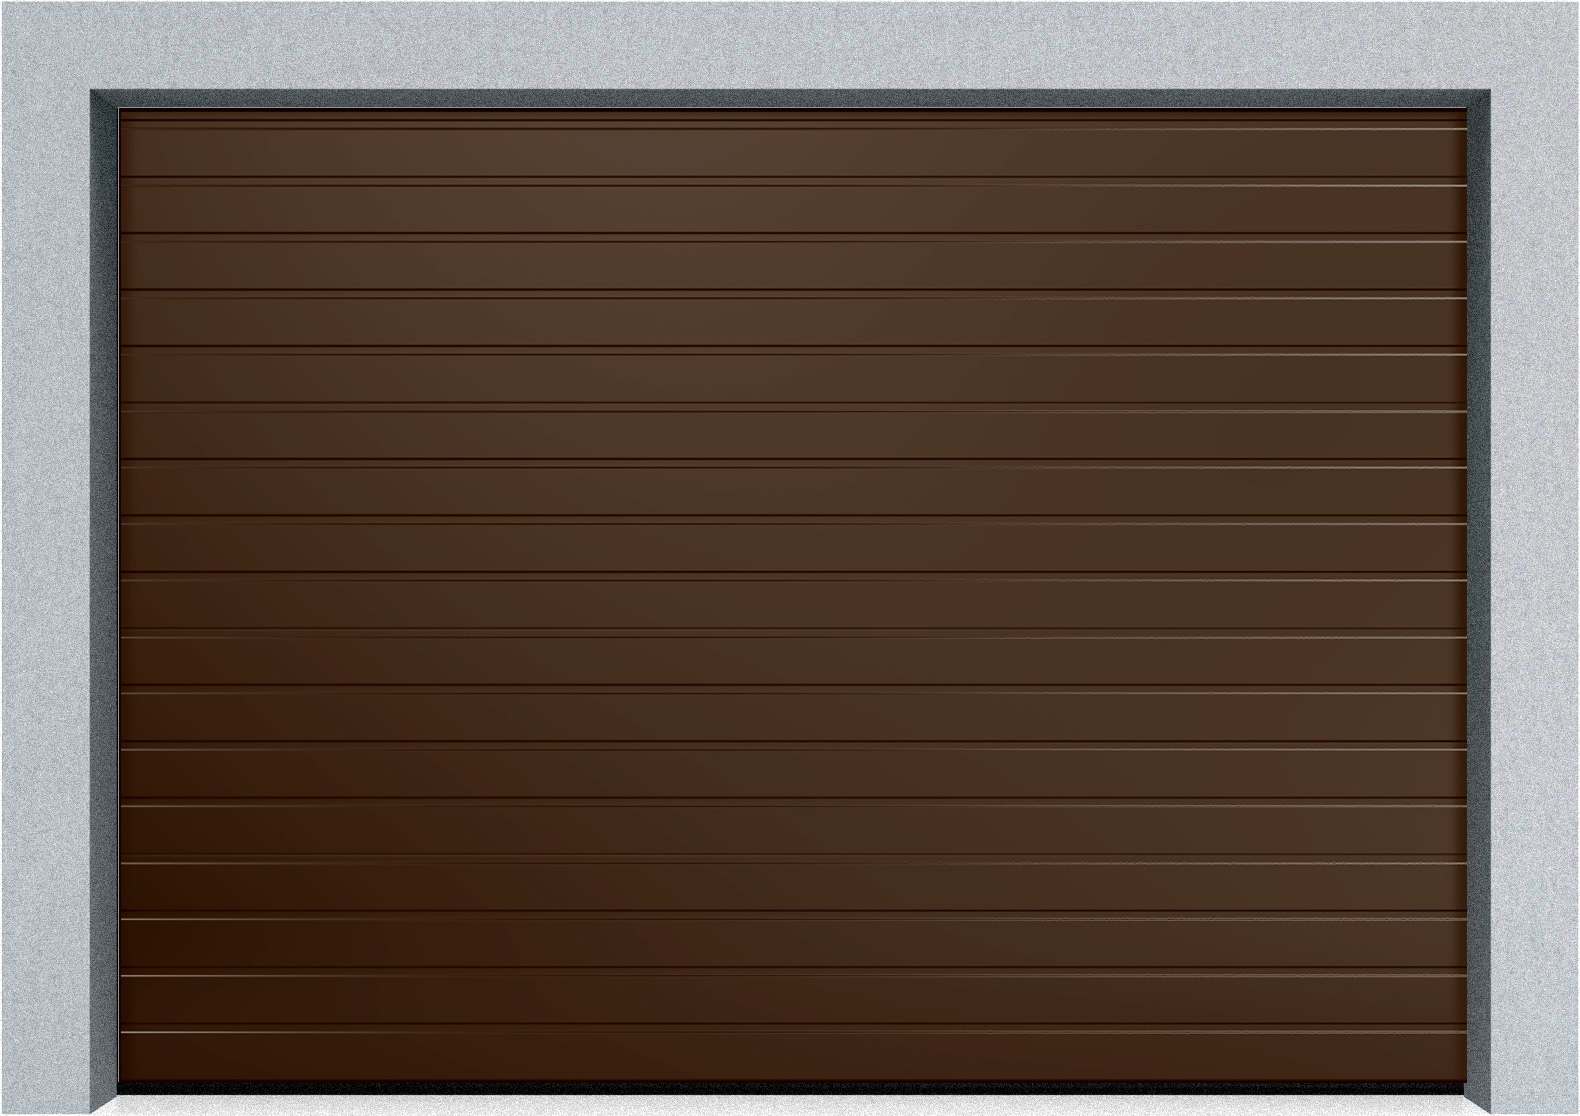  Секционные гаражные ворота DoorHan RSD01 2600x1800 S-гофр, M-гофр, Микроволна стандартные цвета, пружины растяжения, фото 2 